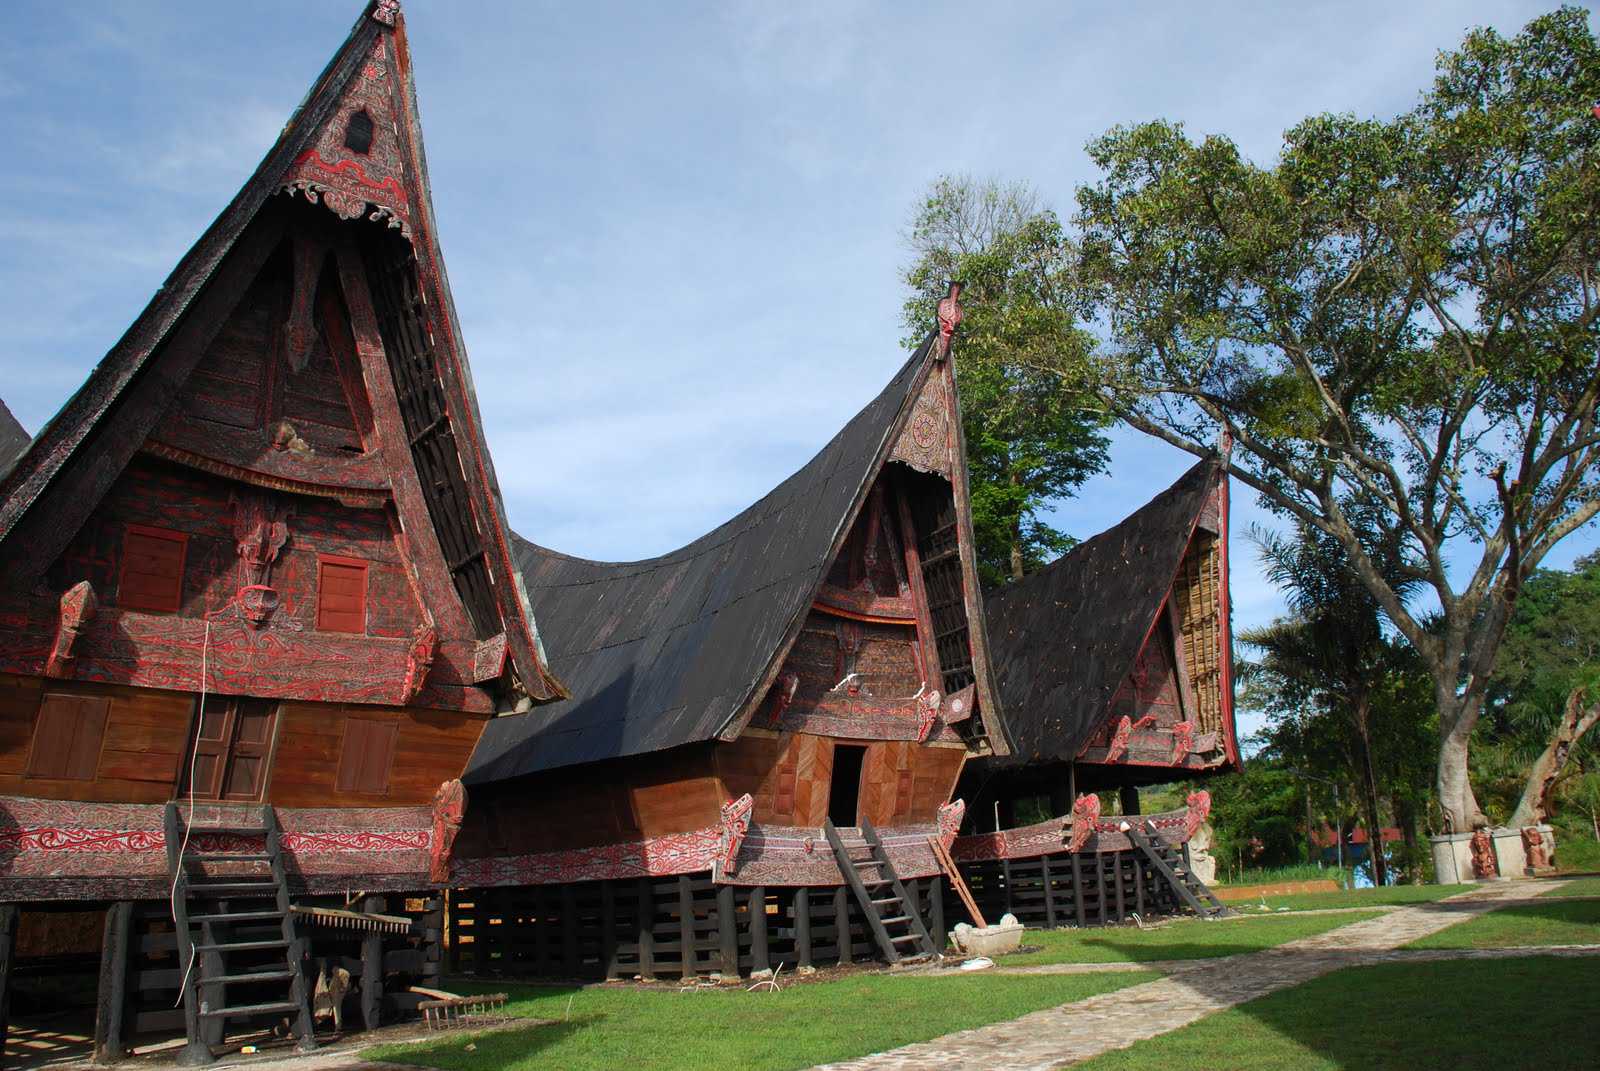 Rumah Adat Bolon Khas Suku Batak memiliki atap berbentuk pelana kuda